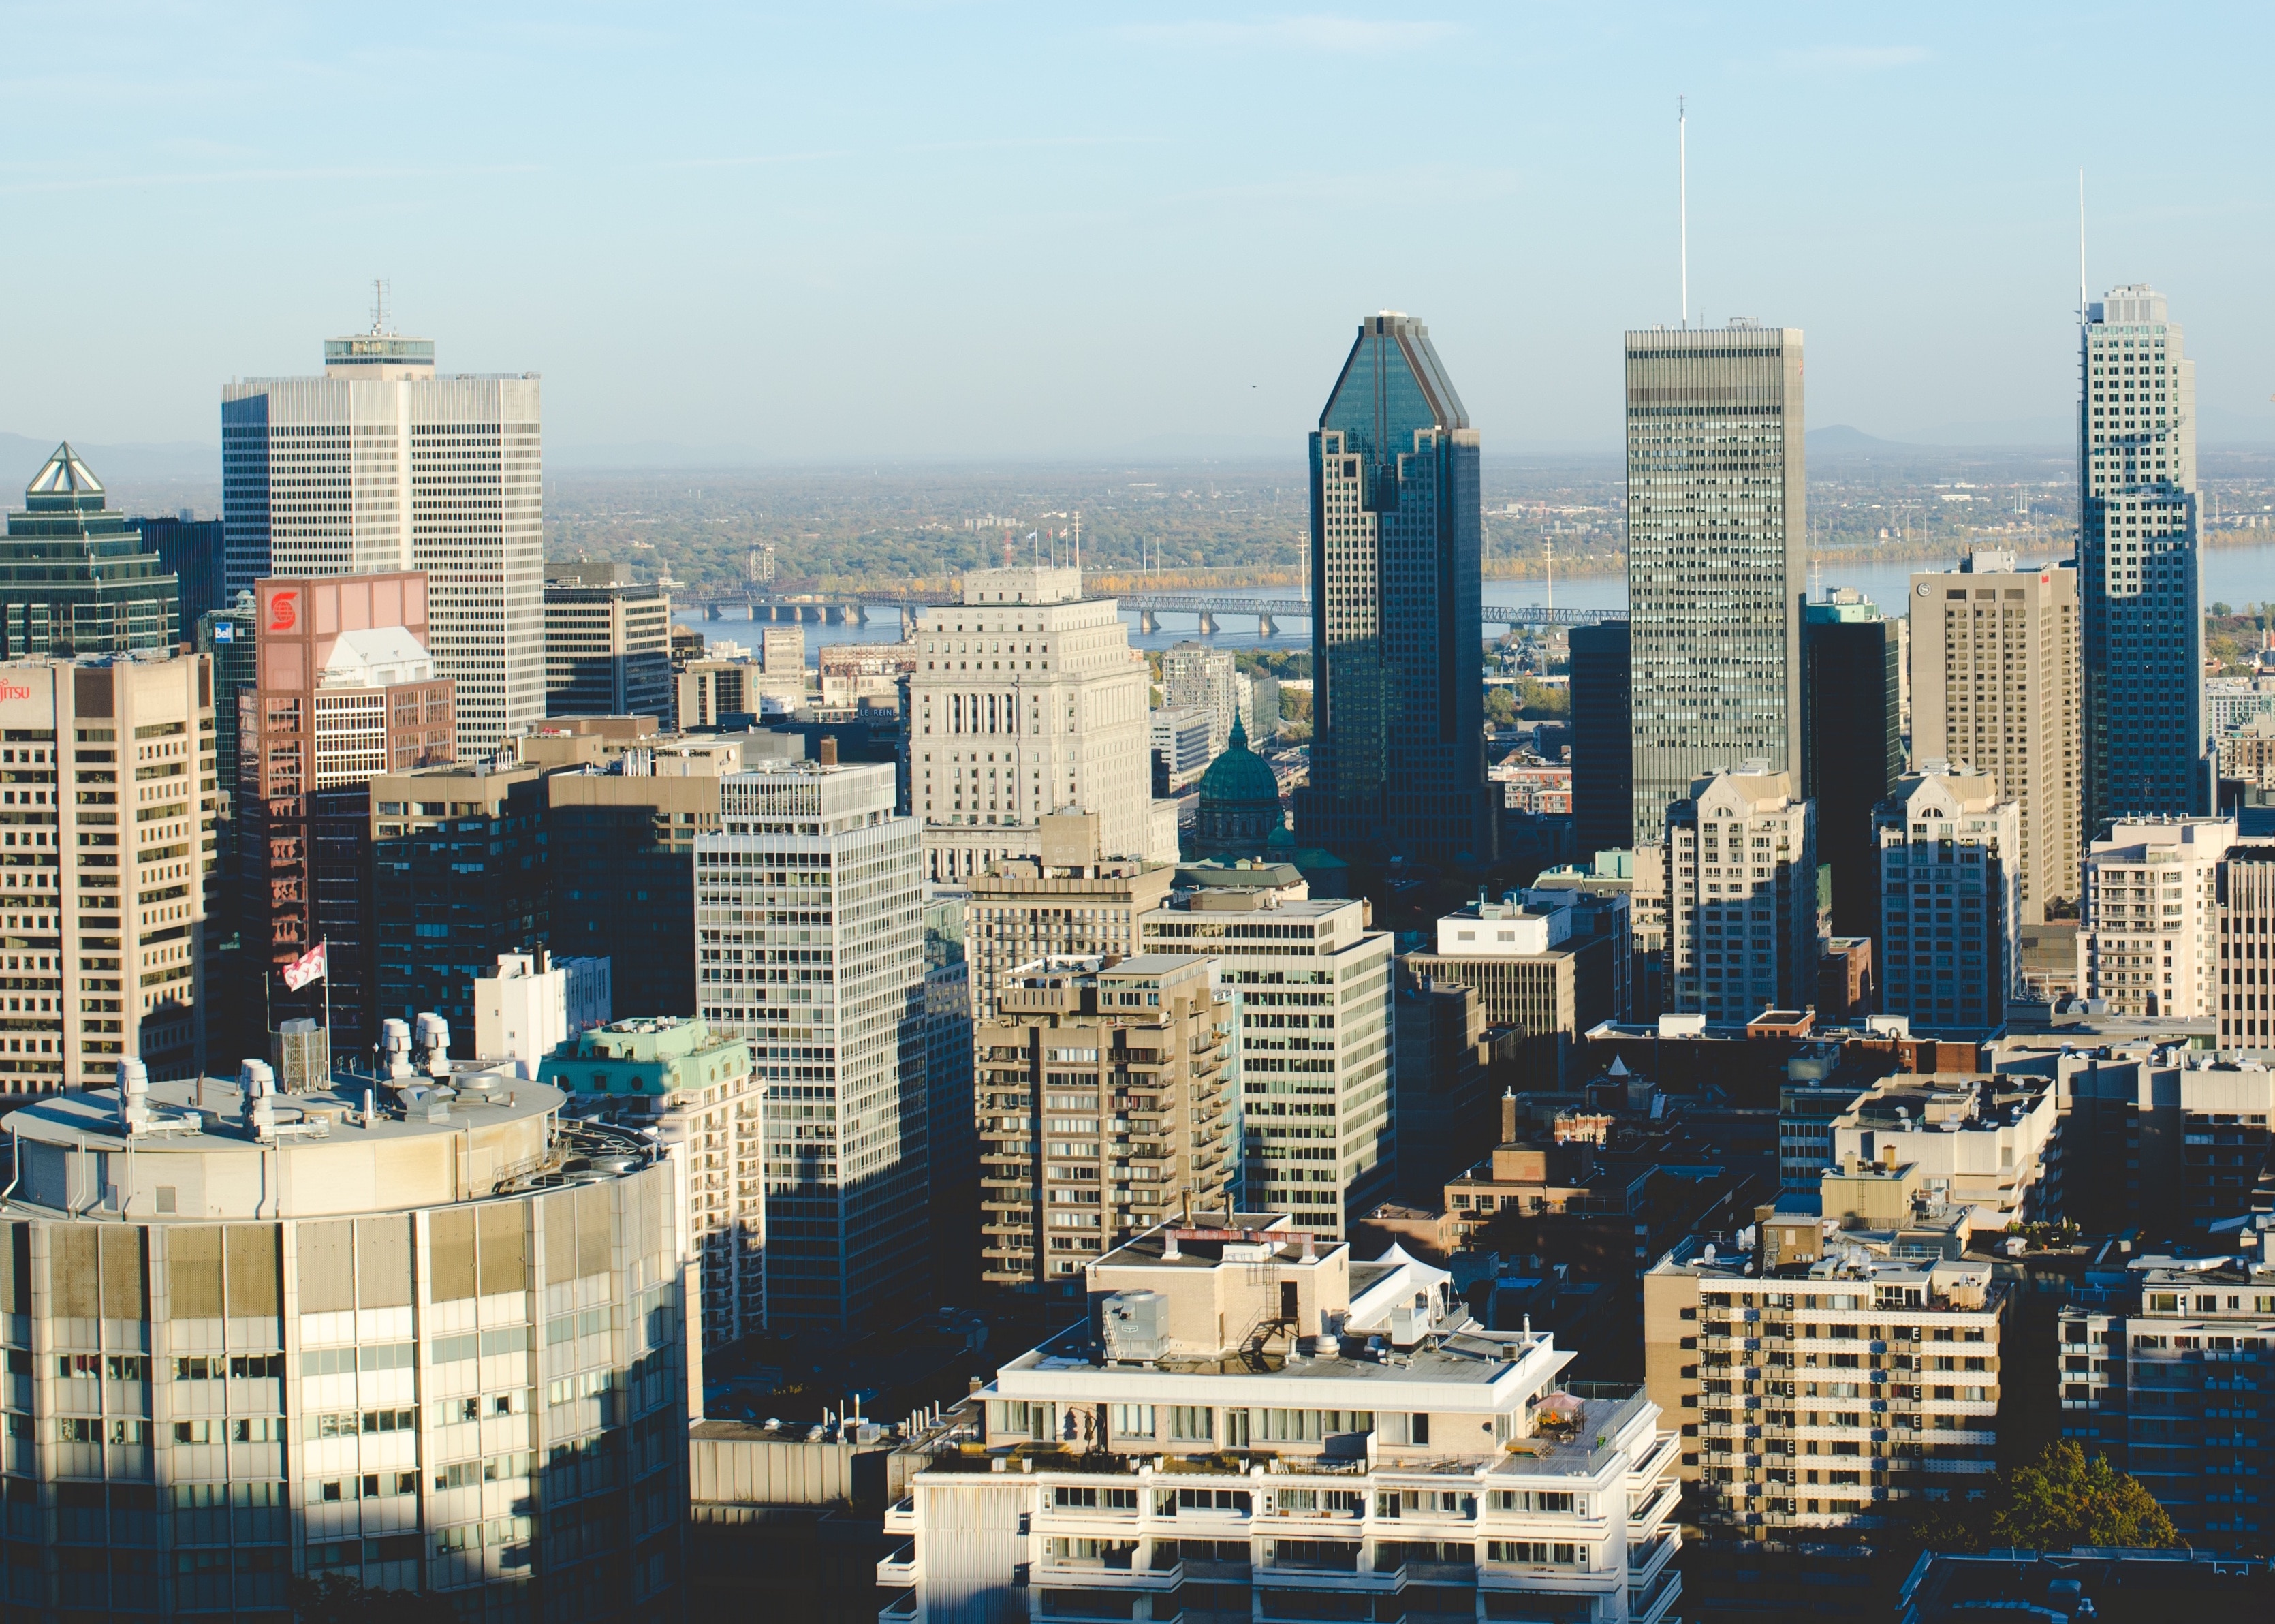 Fotografía del skyline de Montreal por Andrew Welch